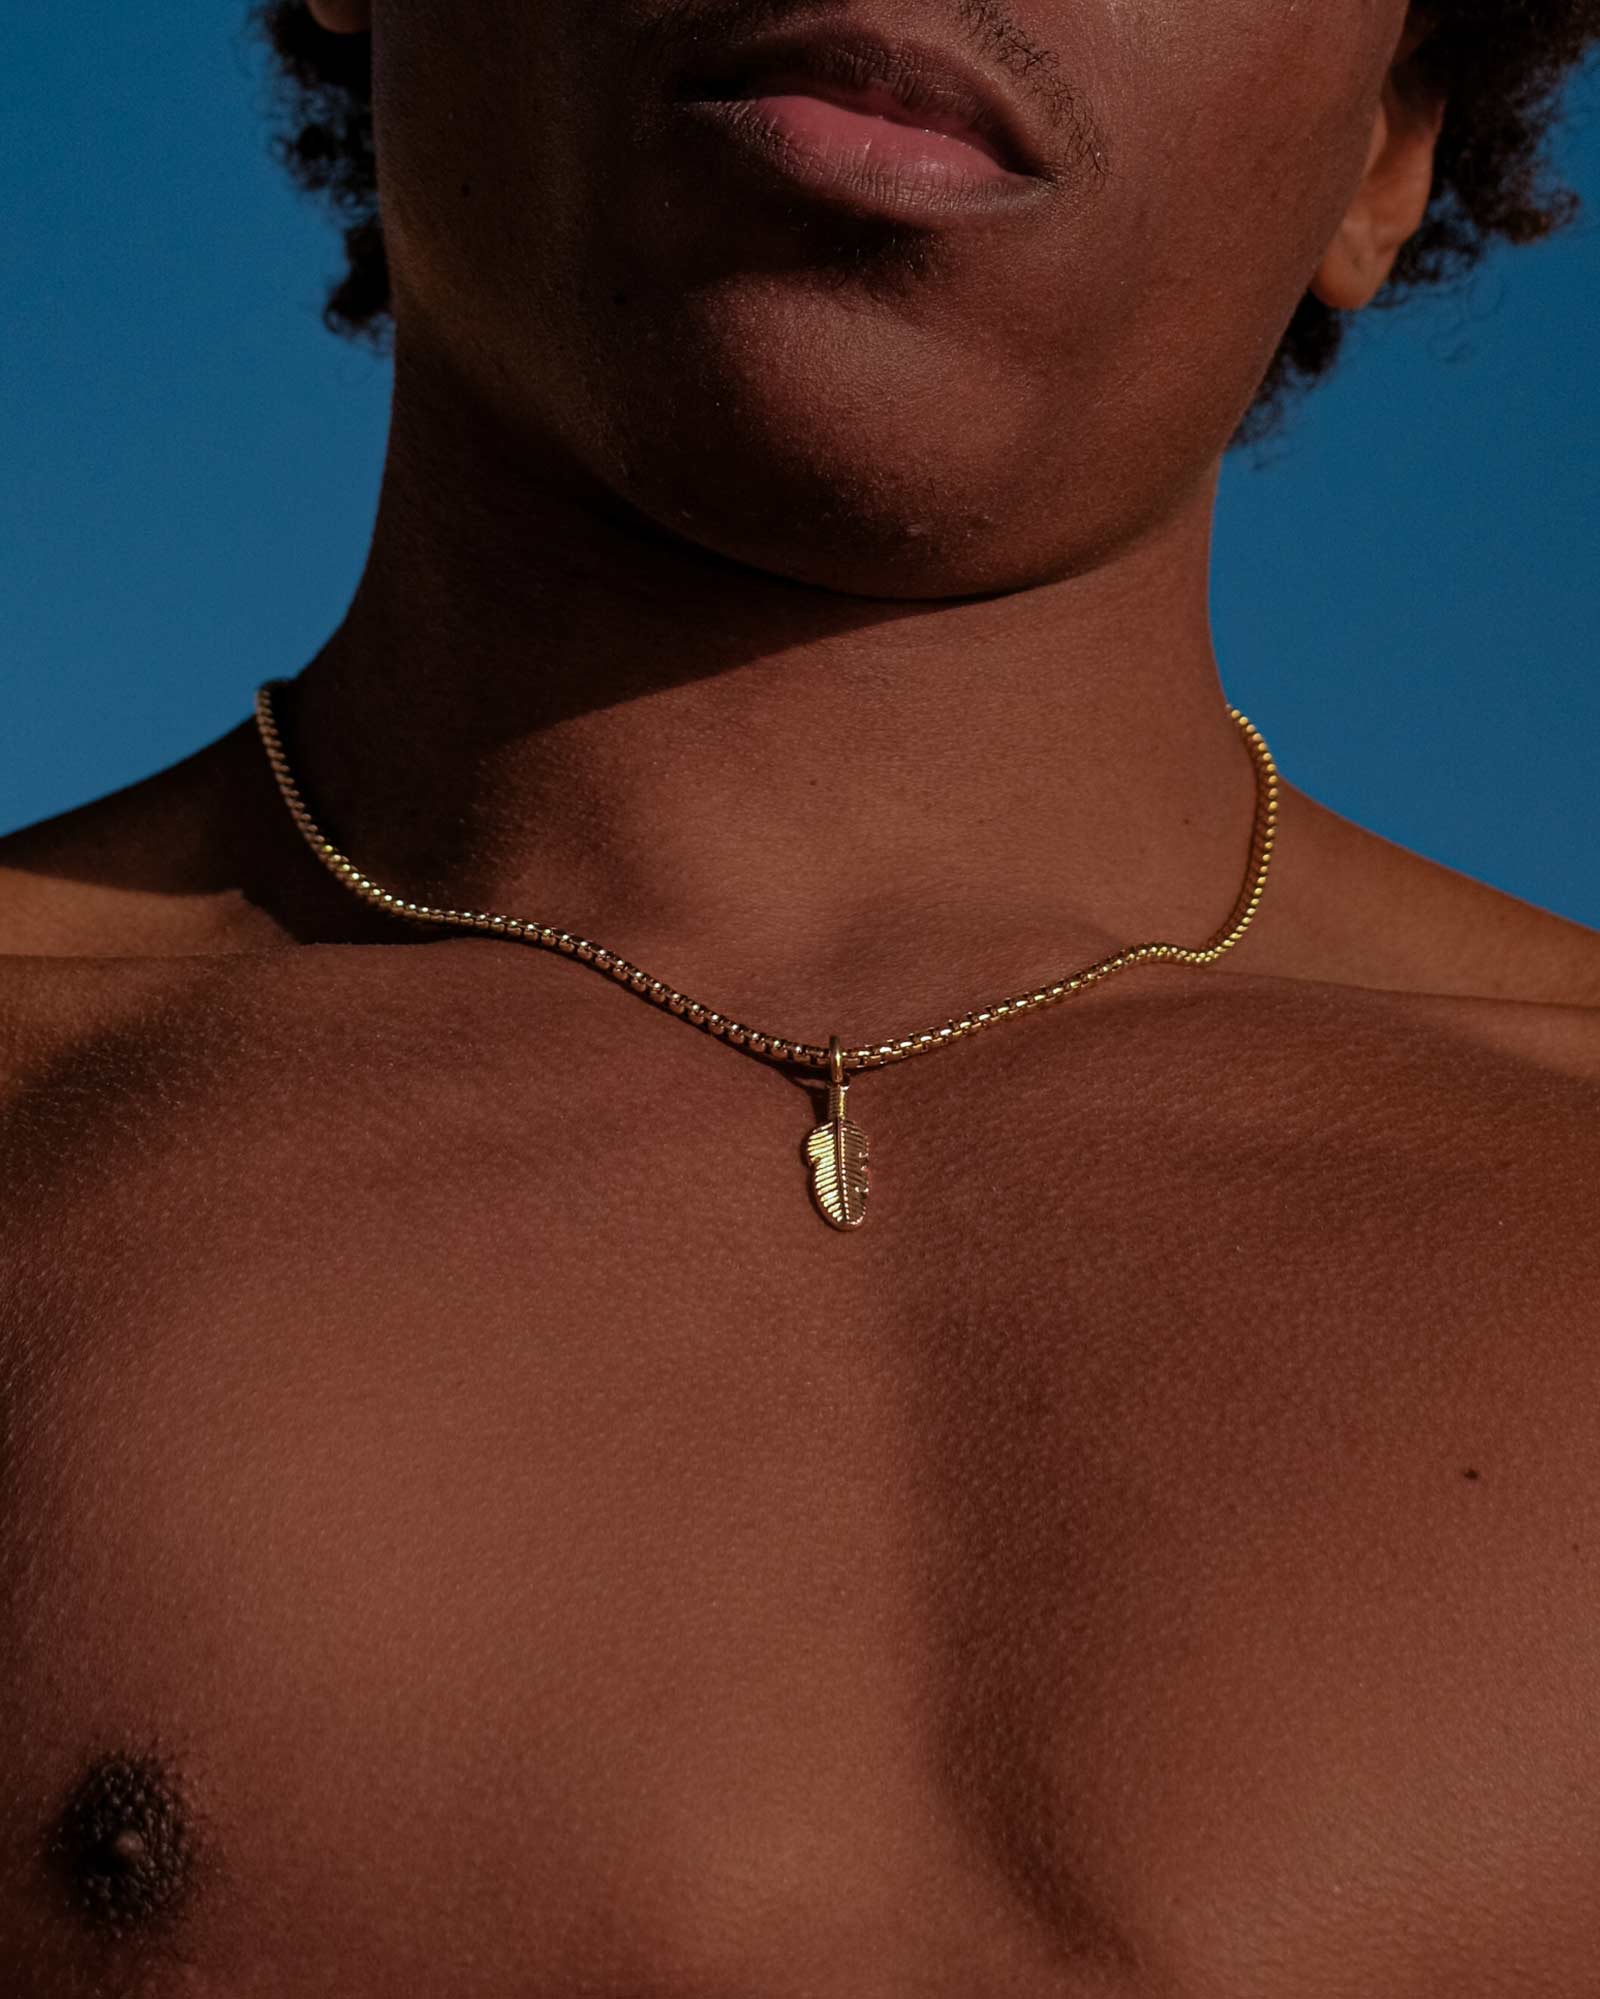 Plume - Collar Plume de acero inoxidable dorado con colgante de pluma en el cuello del modelo - collares con colgante - joyería unisexo online - Dicci